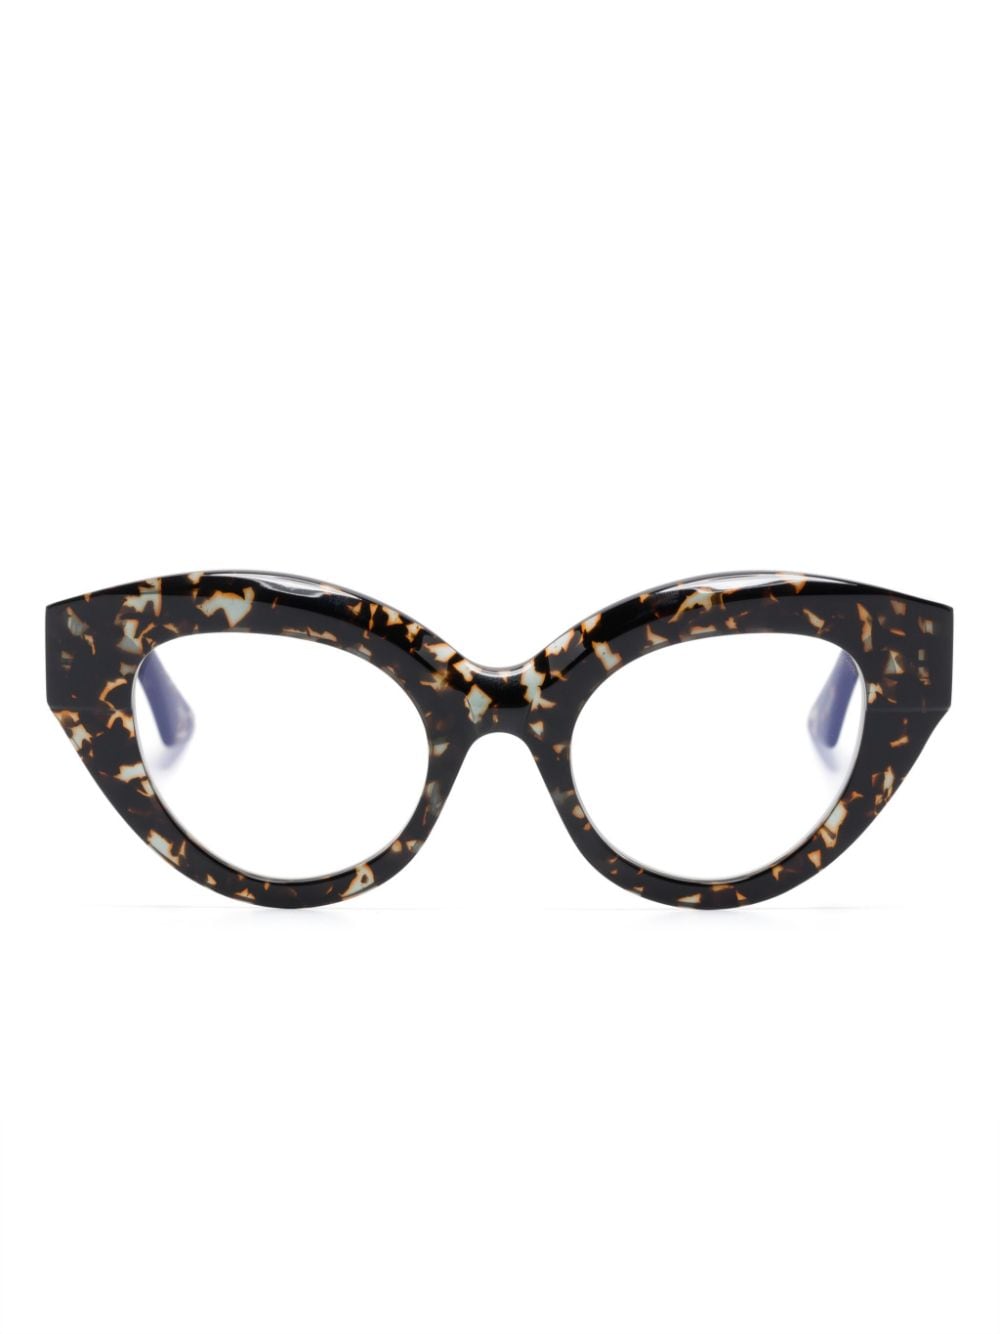 Kuboraum K35 cat-eyes frame glasses - Brown von Kuboraum